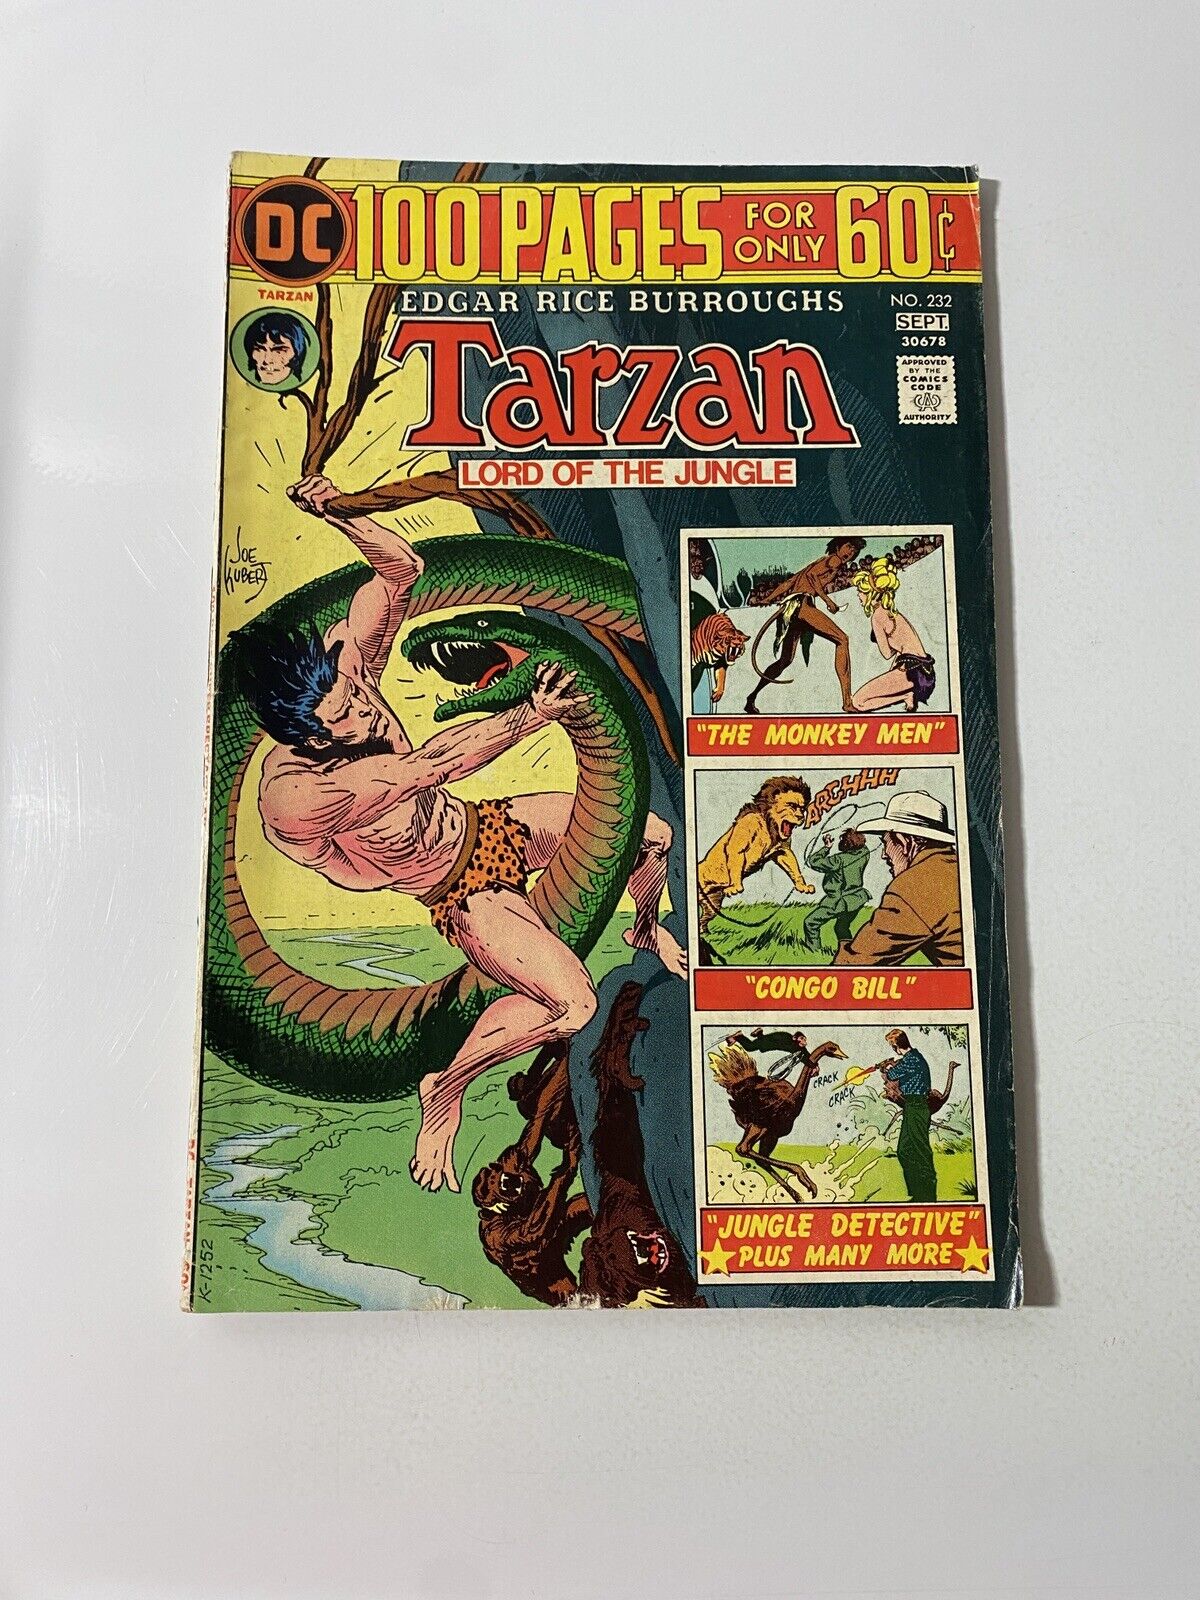 Tarzan #232 DC Comics 1975 Bronze Age 100 pages Edgar Rice Burroughs